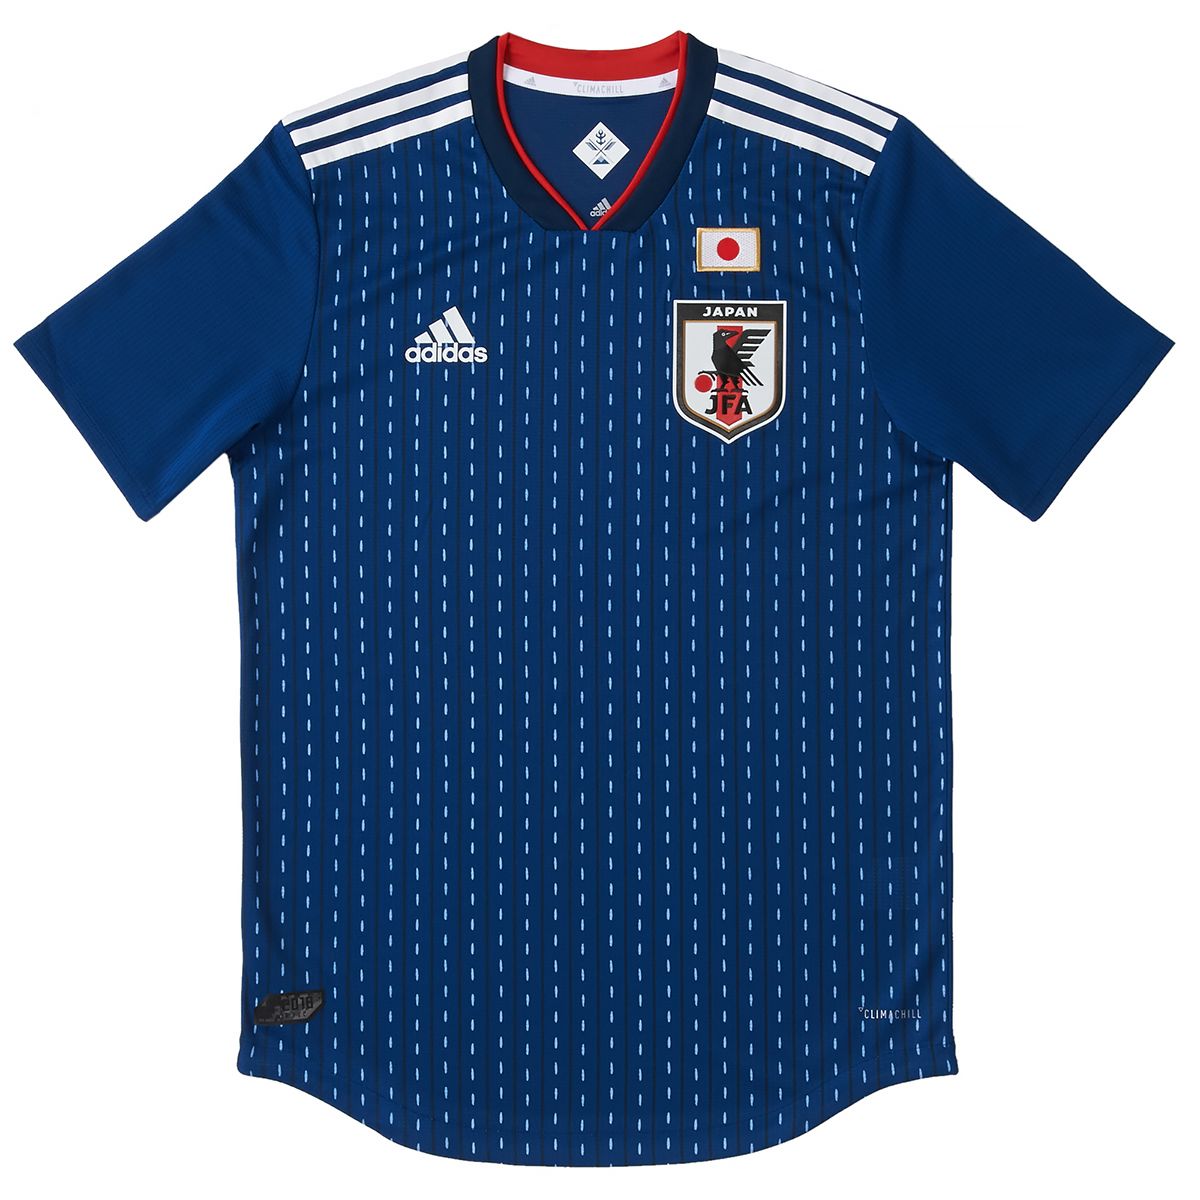 Japan Soccer Uniform | vlr.eng.br